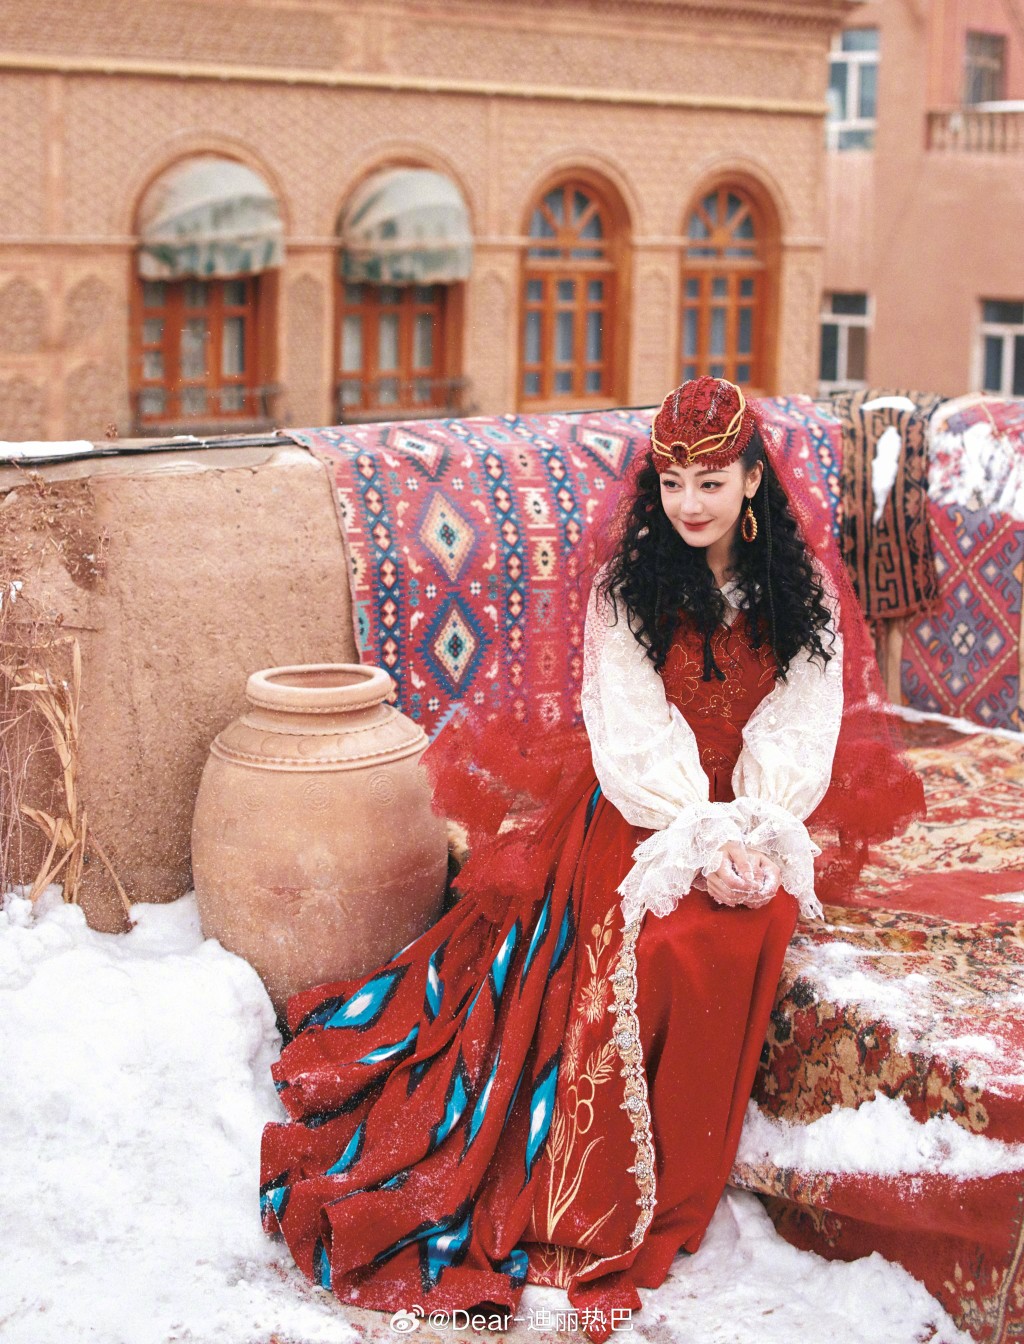 迪丽热巴公开穿维族表演服饰的美照。